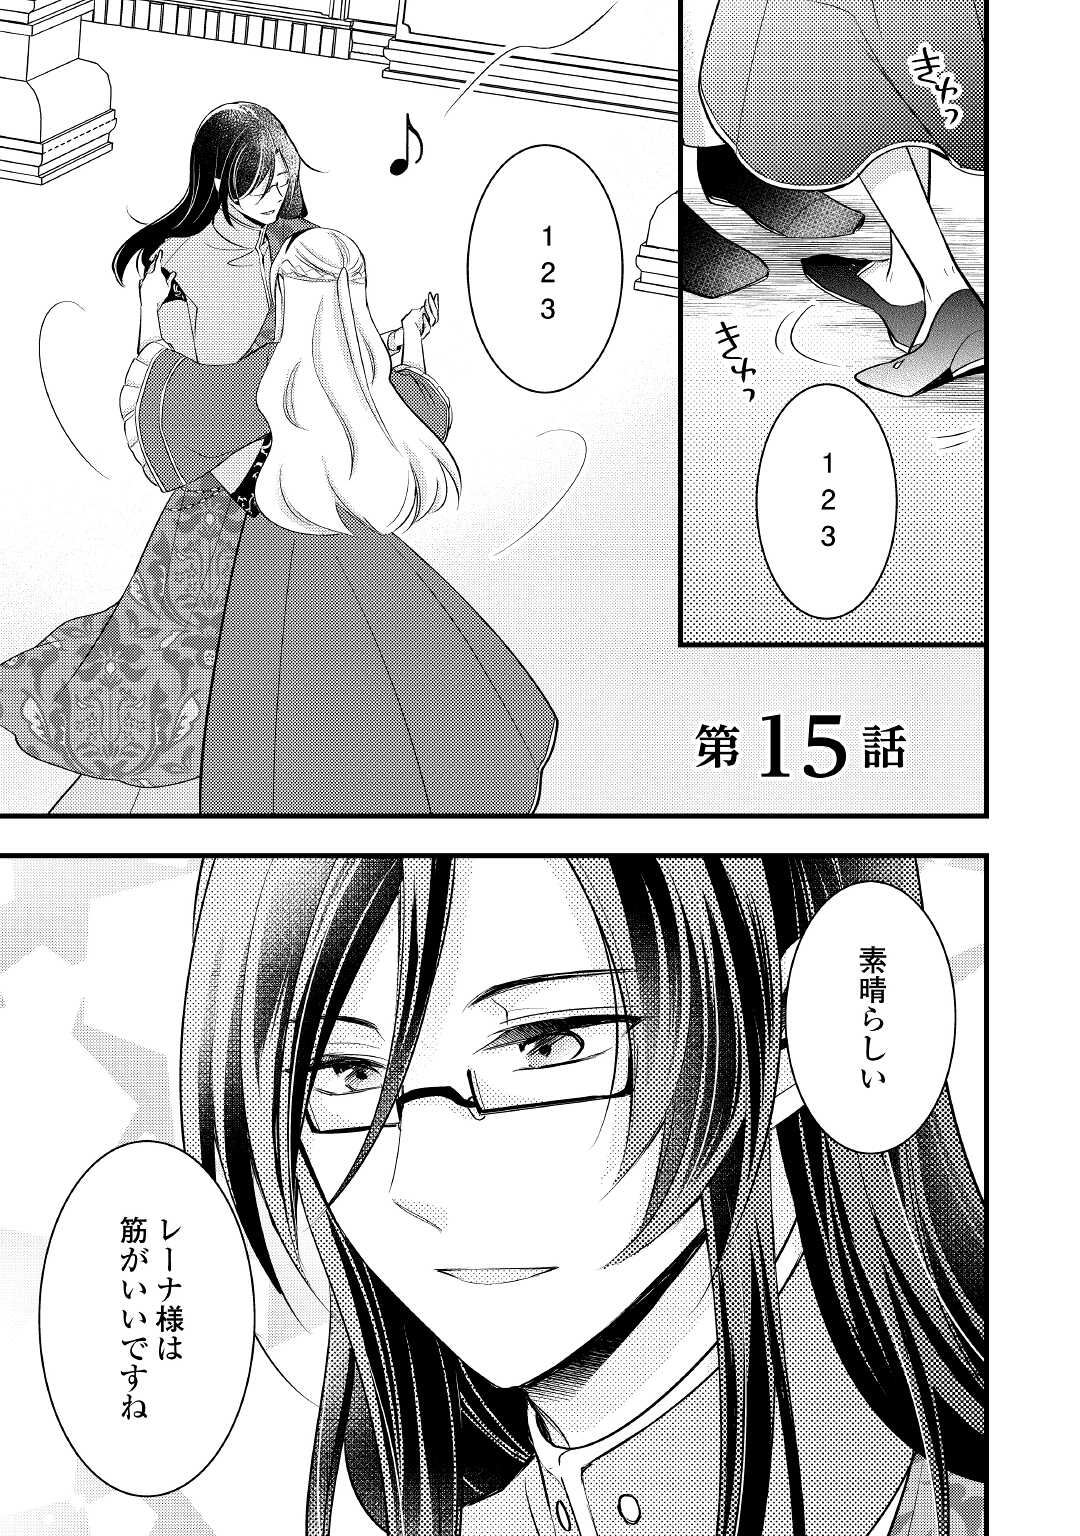 Akuyaku Reijou wa Heroine wo Ijimeteiru Baai de wa Nai - Chapter 15 - Page 1